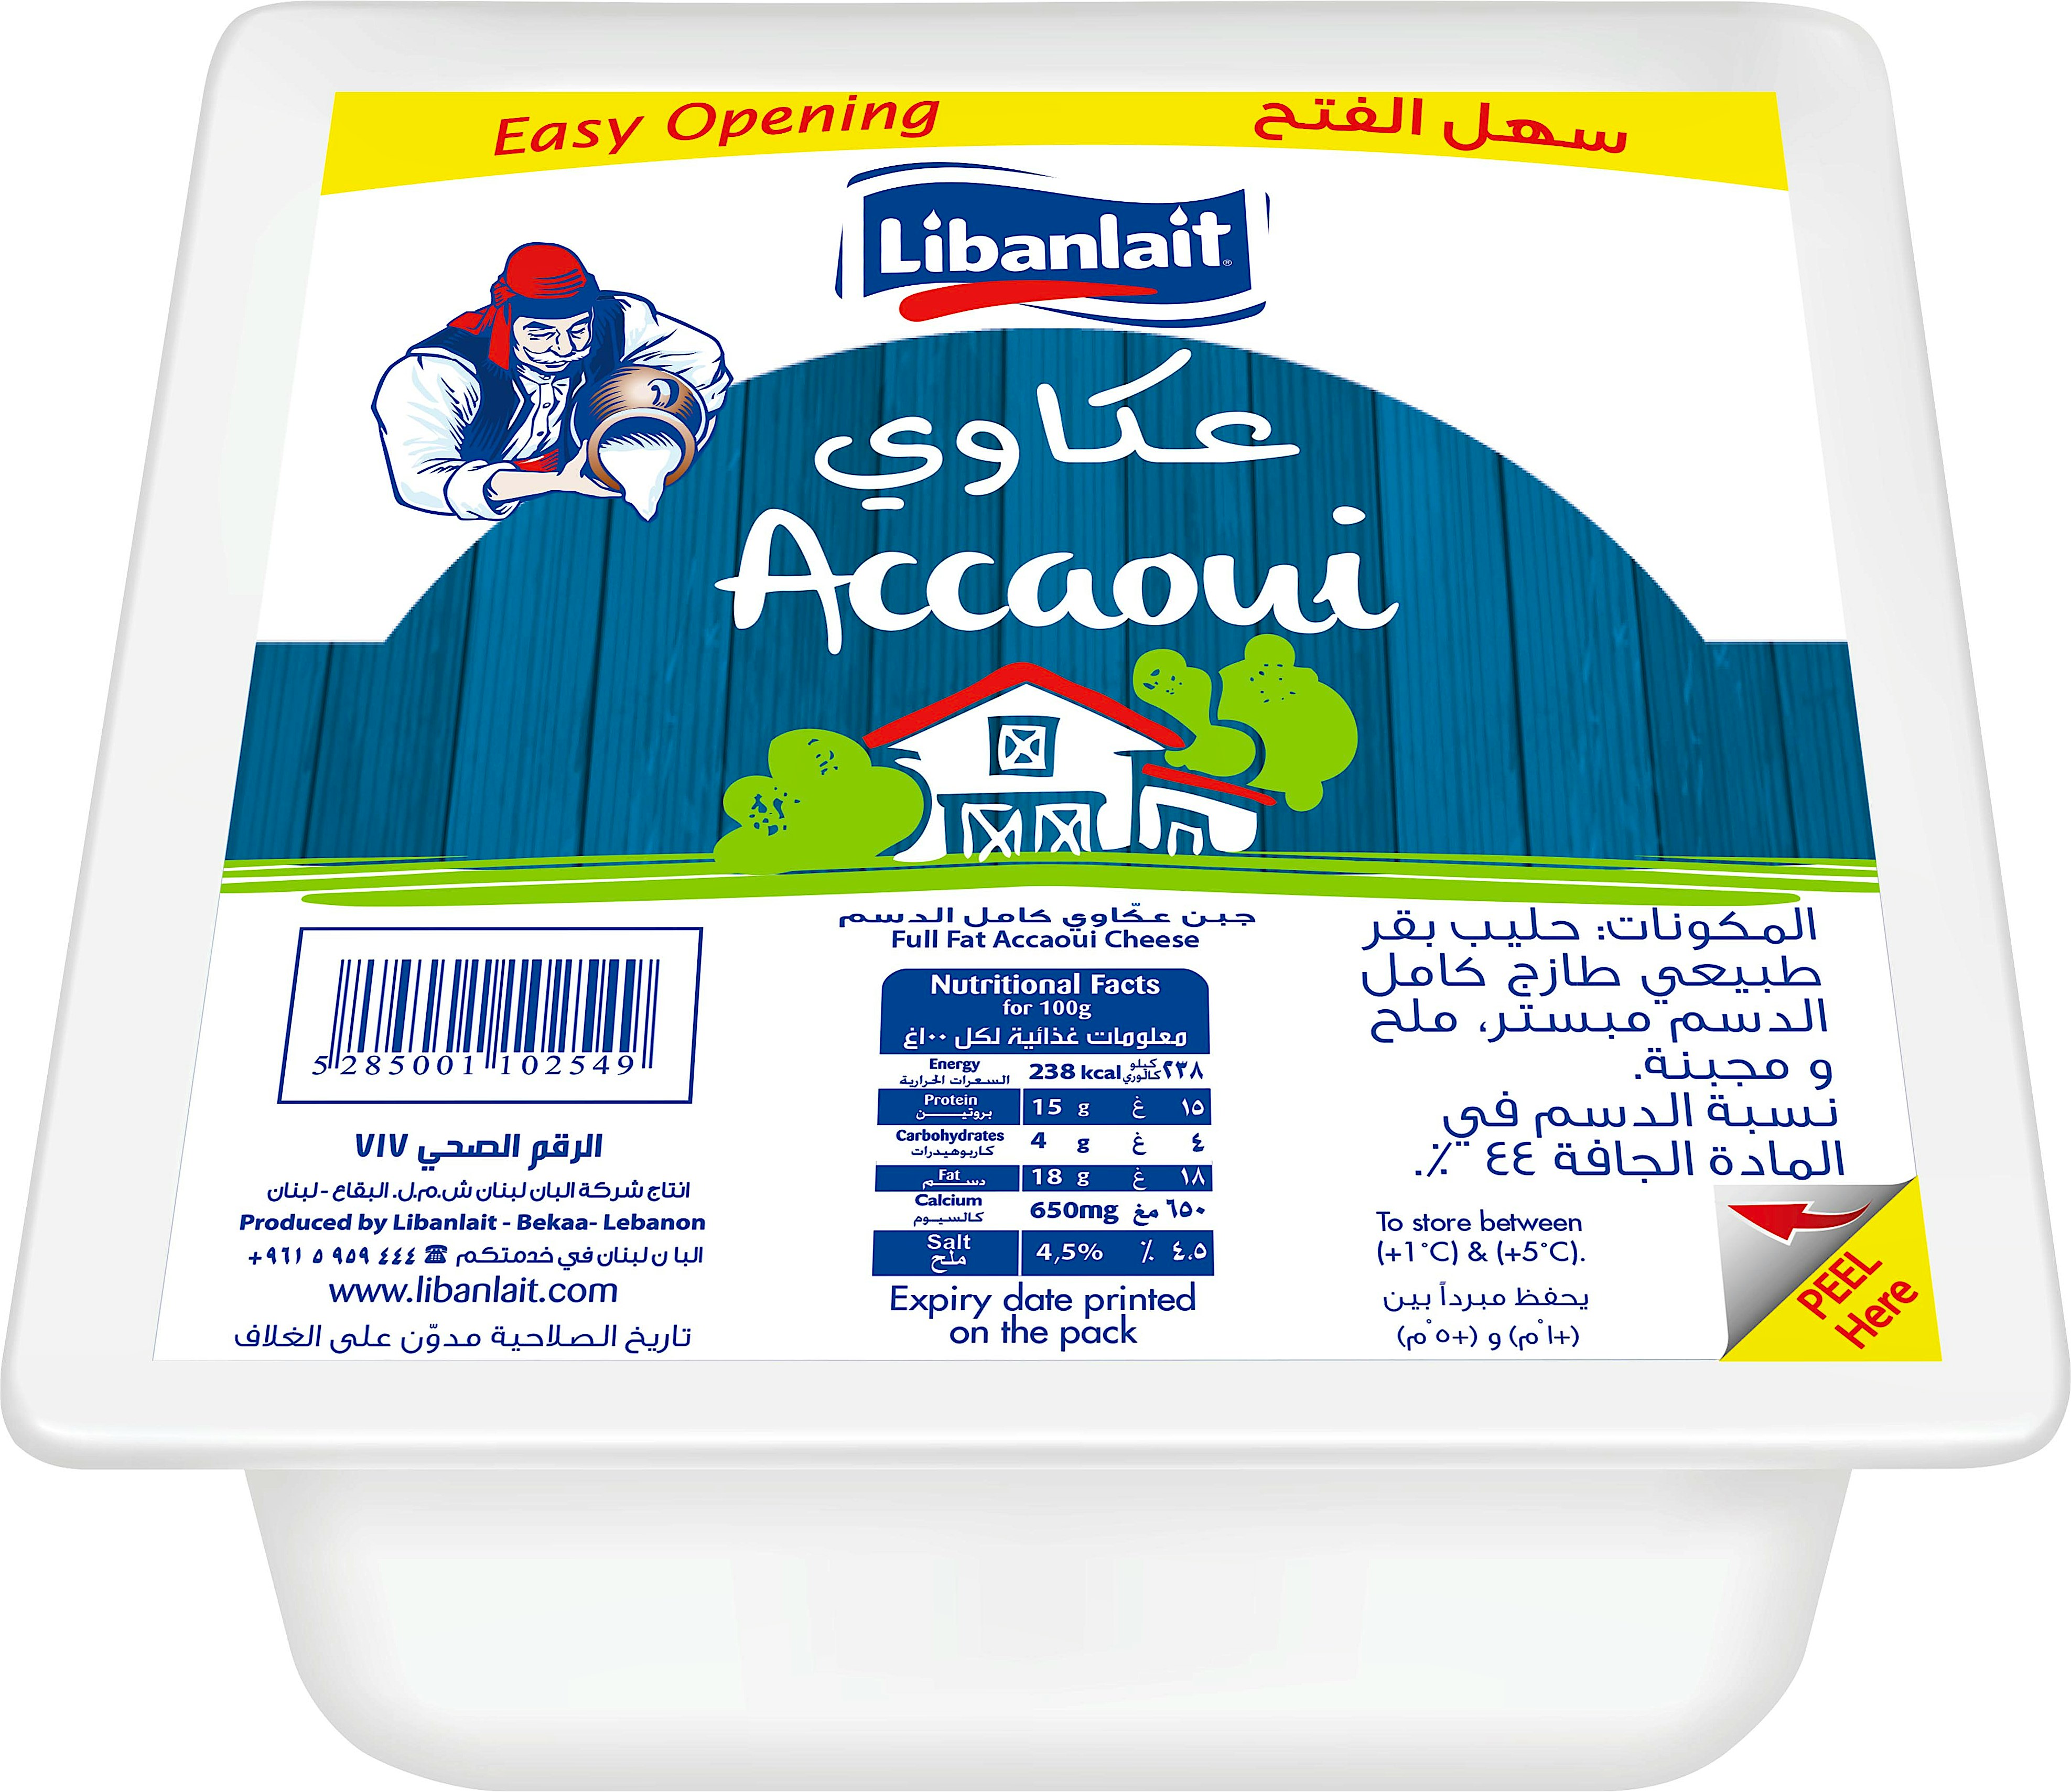 Libanlait Accaoui